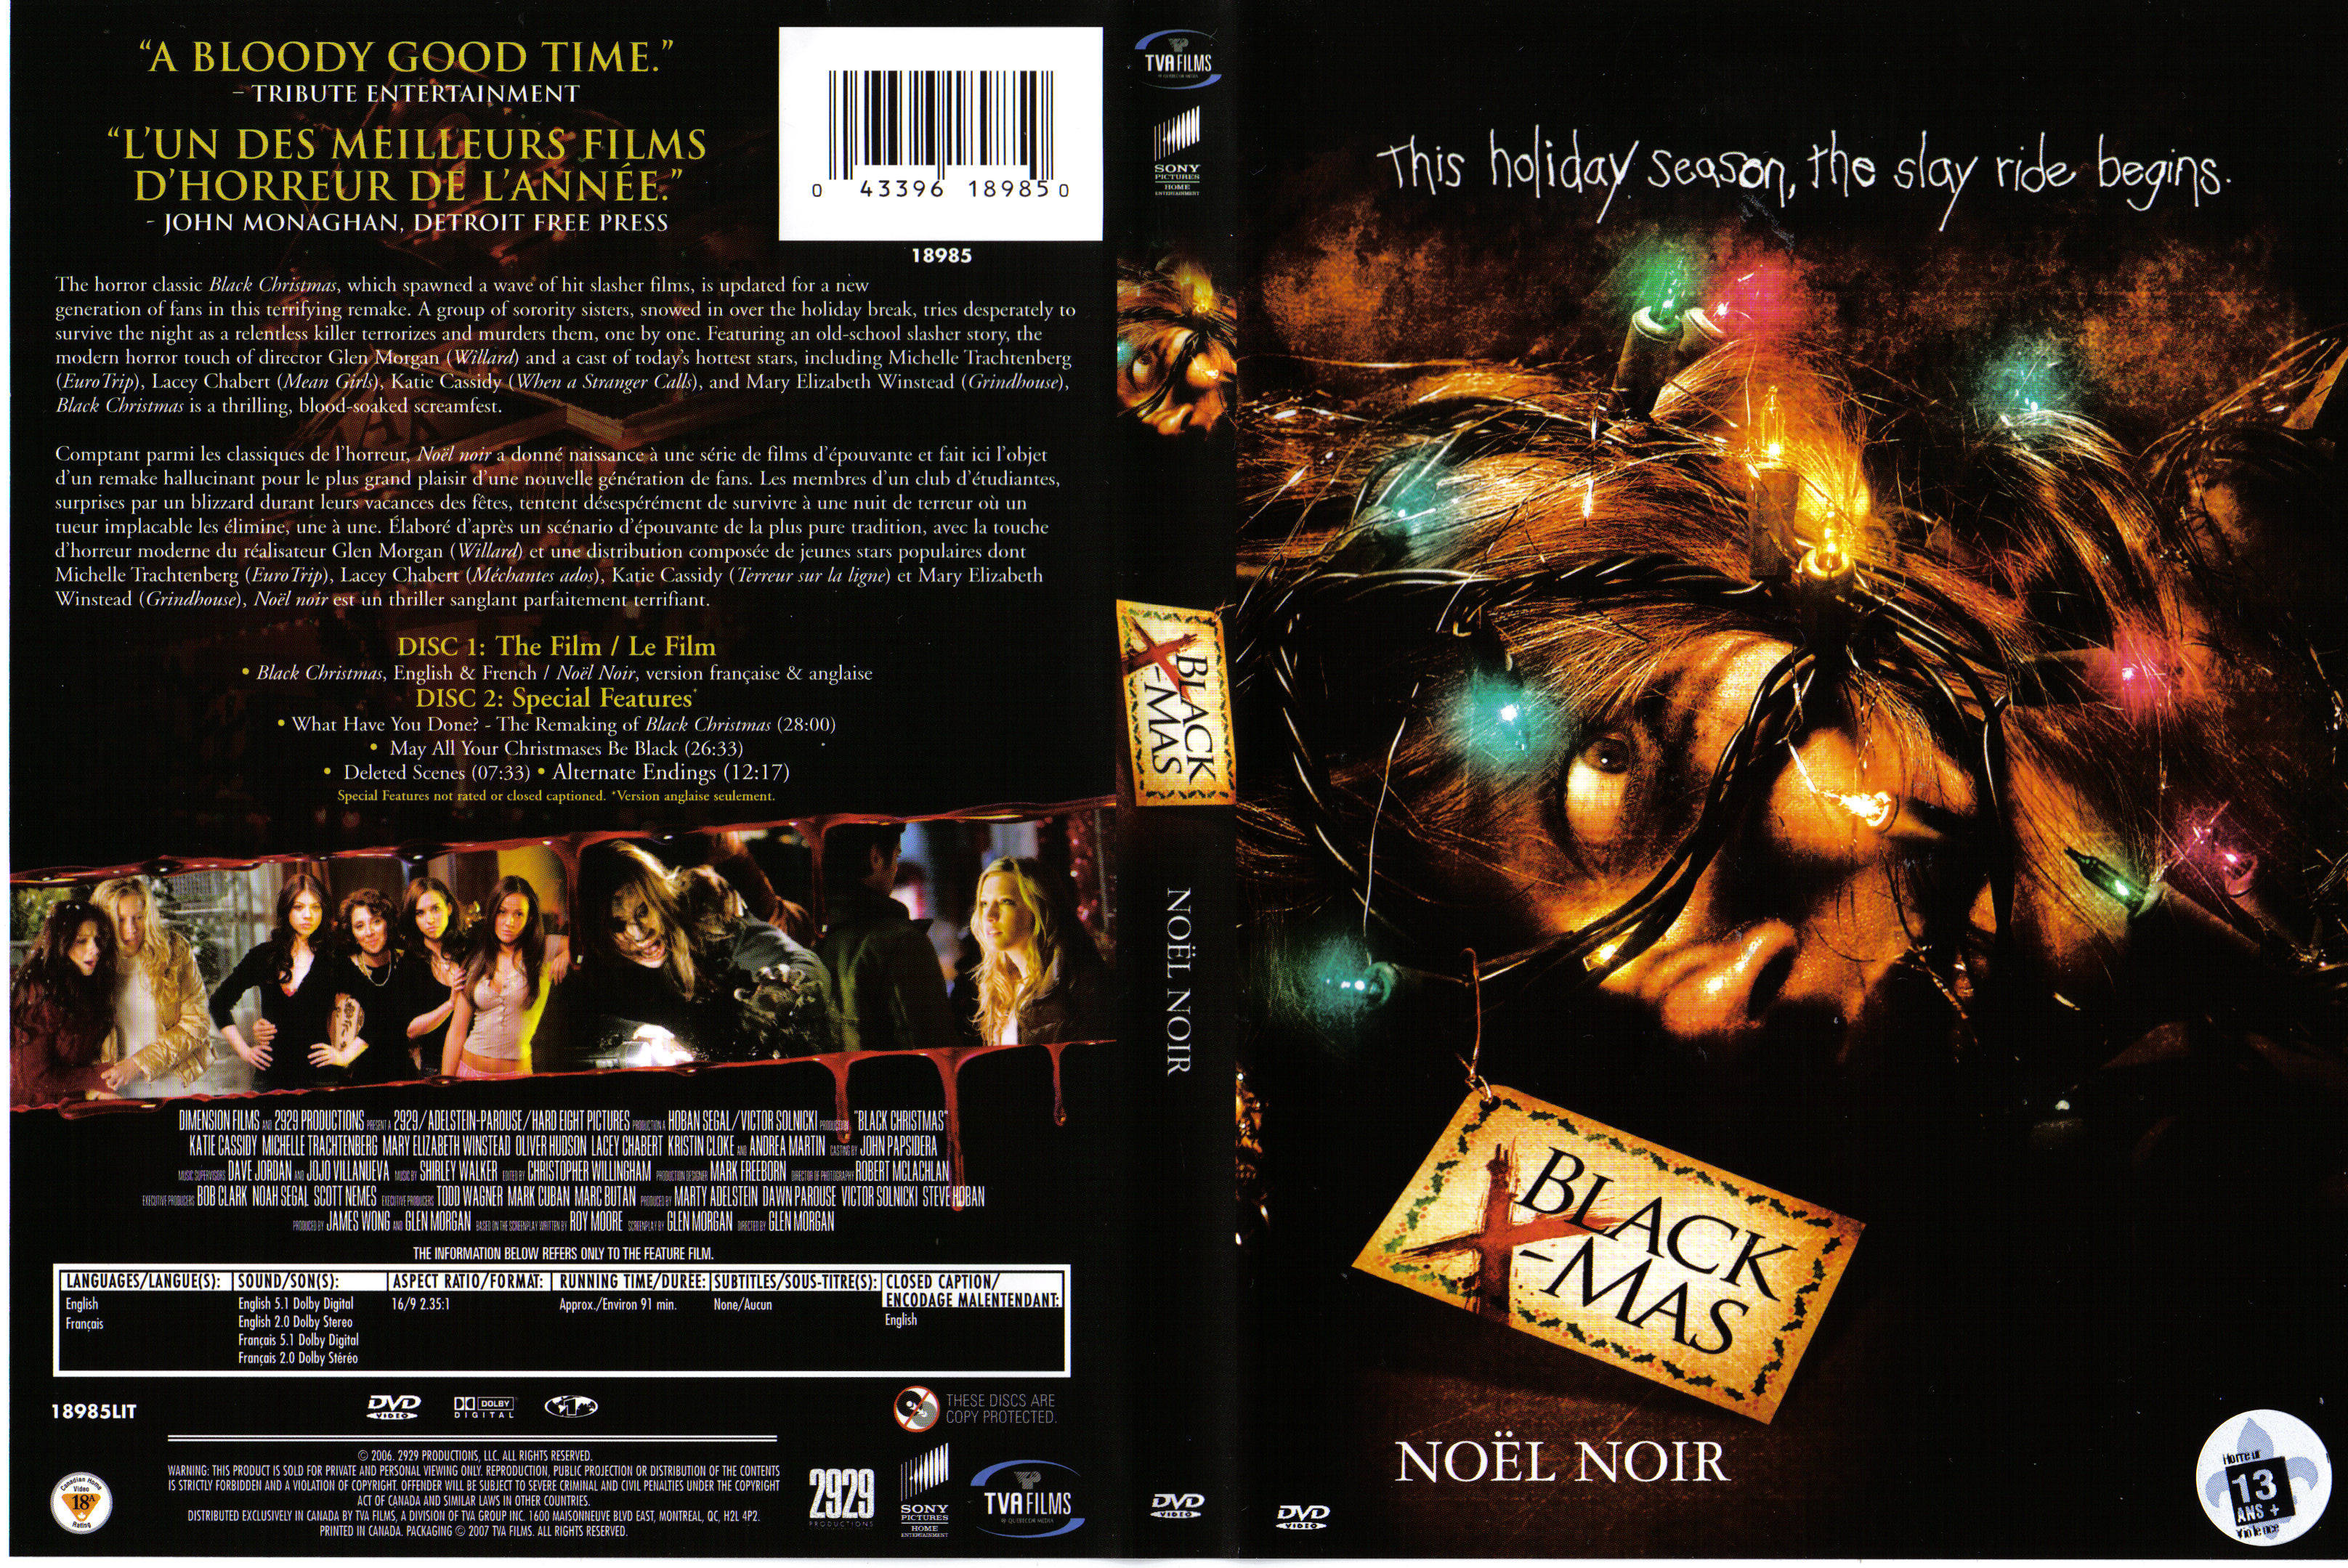 Jaquette DVD Noel Noir